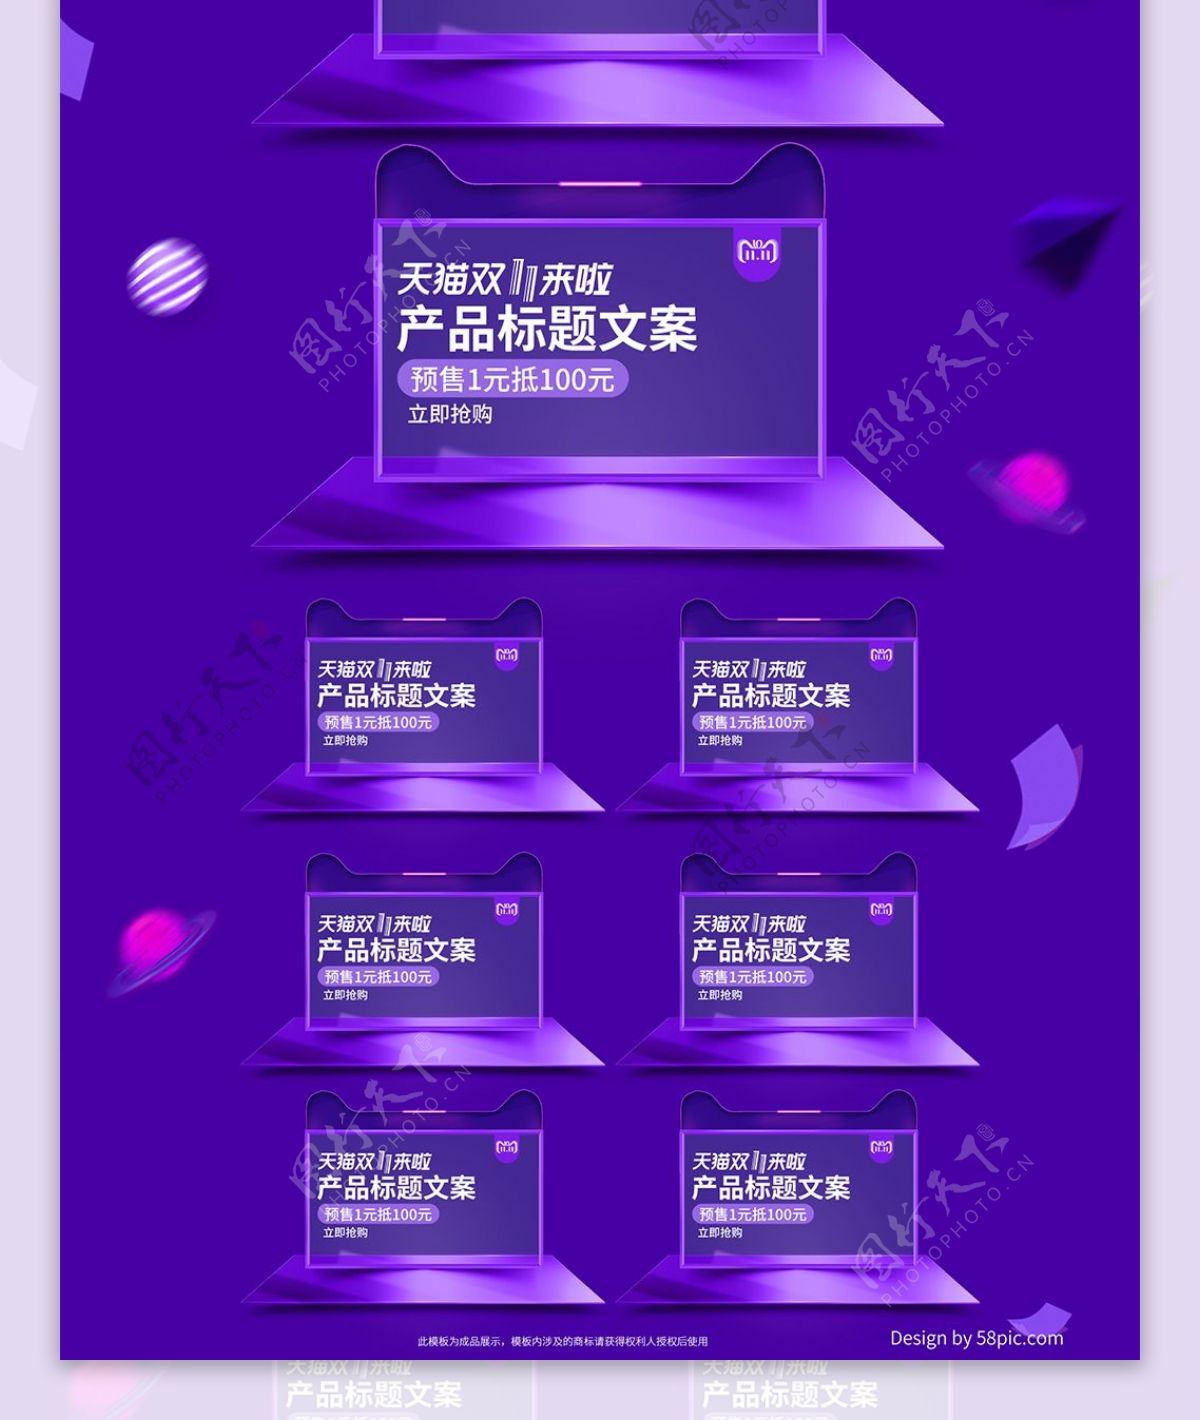 紫色炫酷欧普双十一双11预售促销电商首页